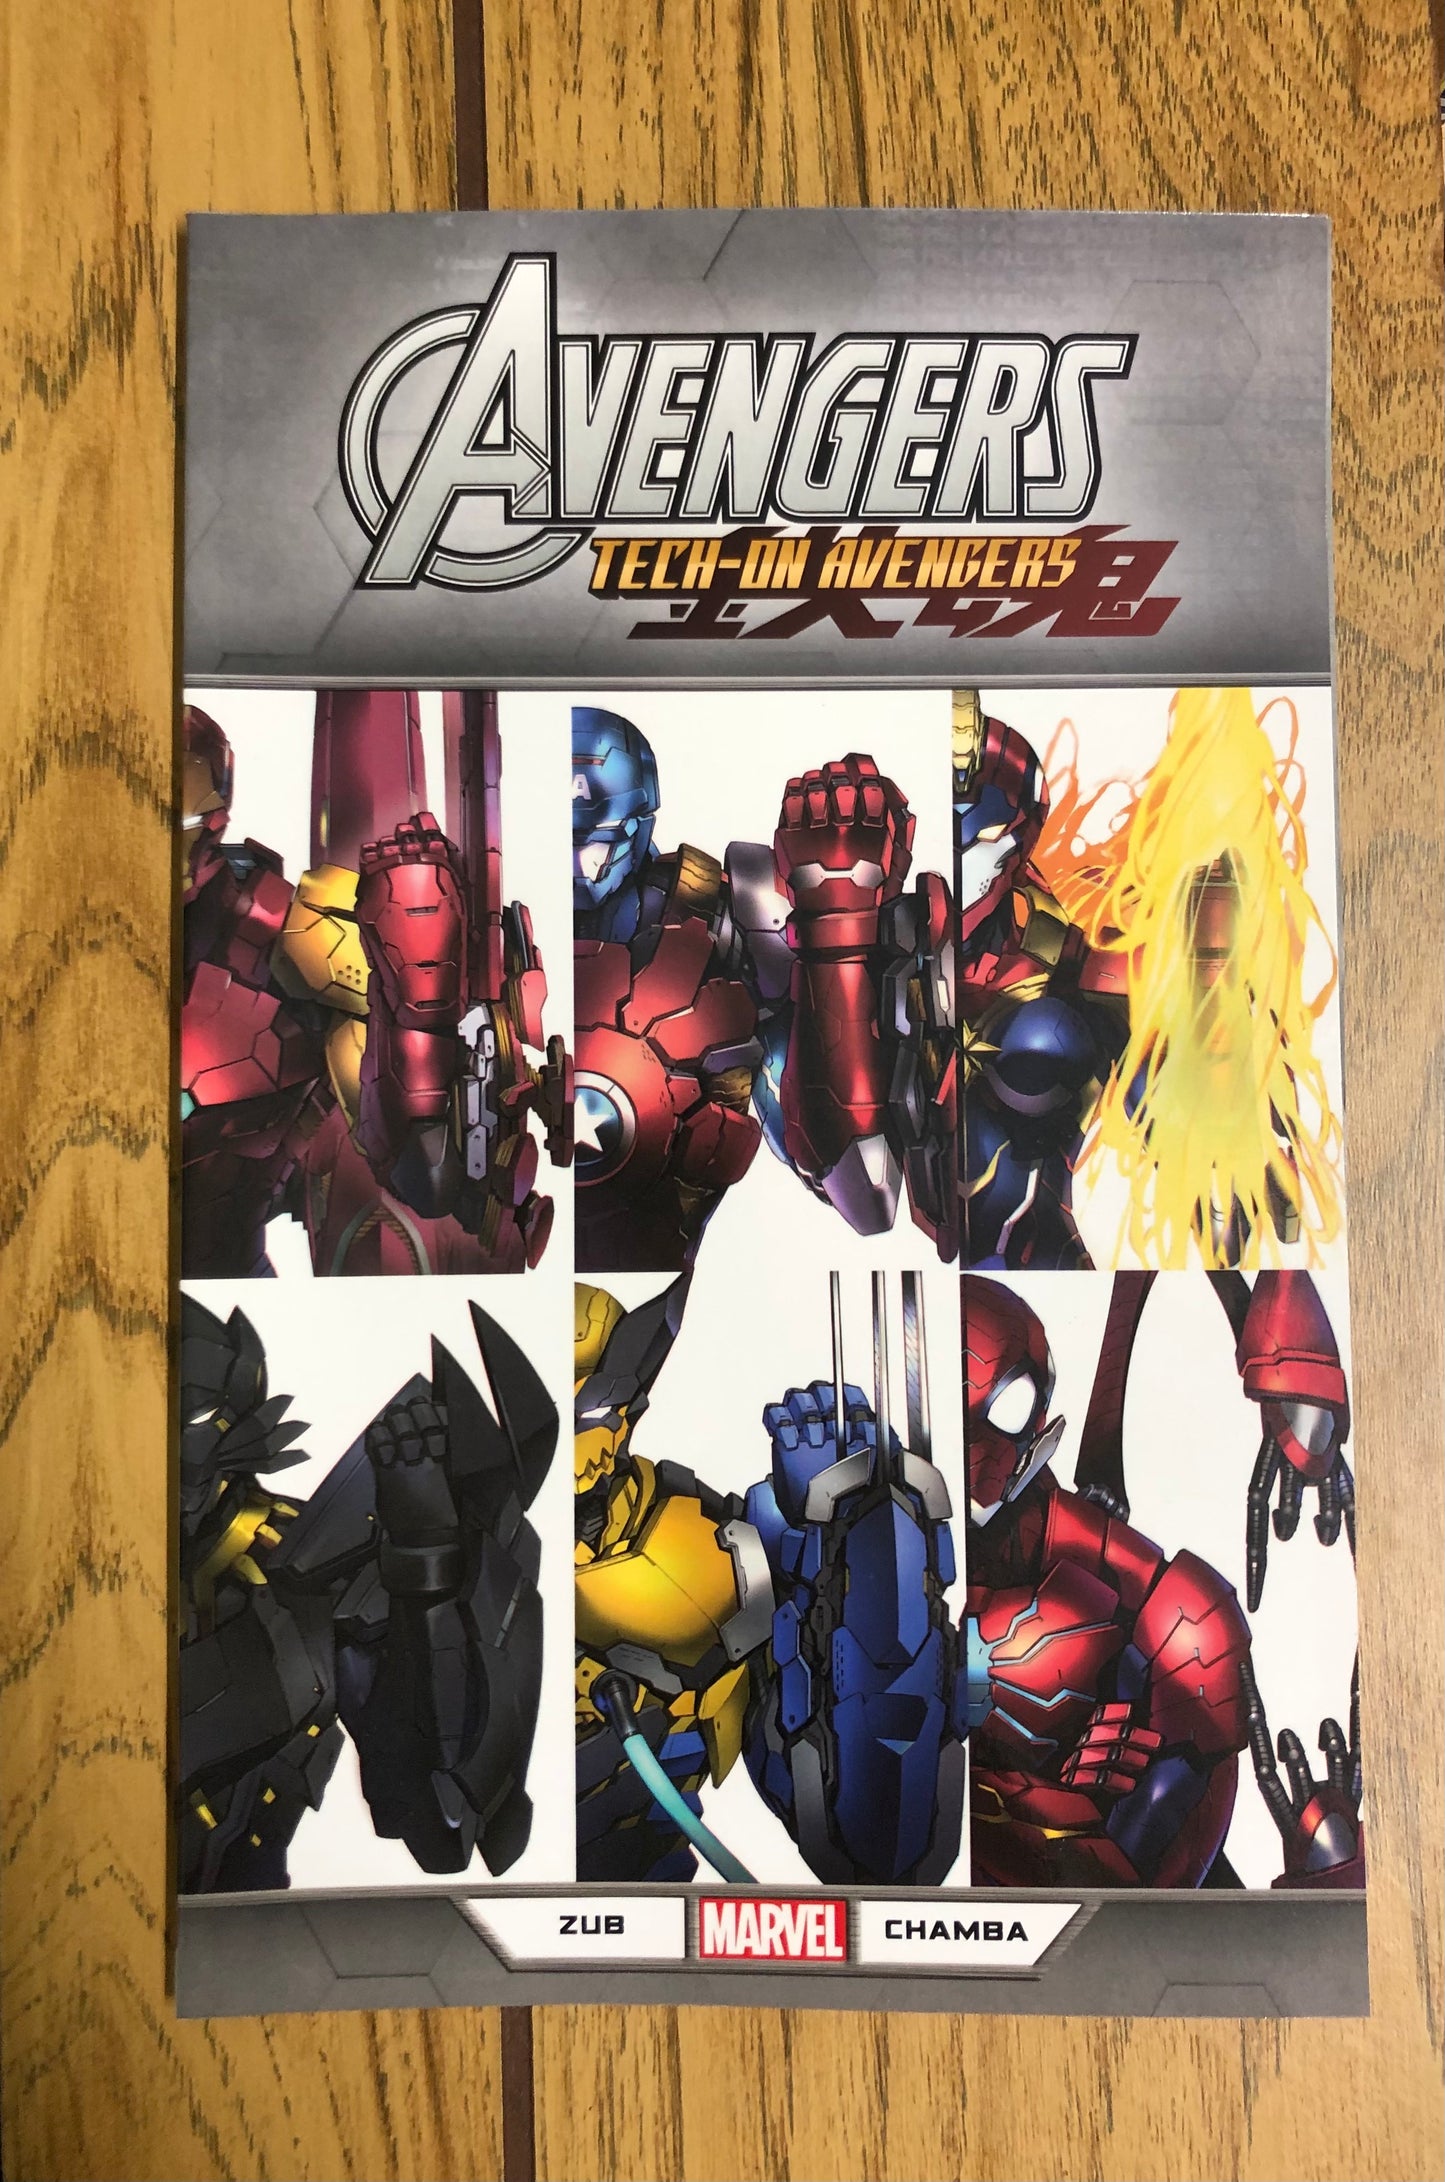 Avengers: Tech-On Avengers